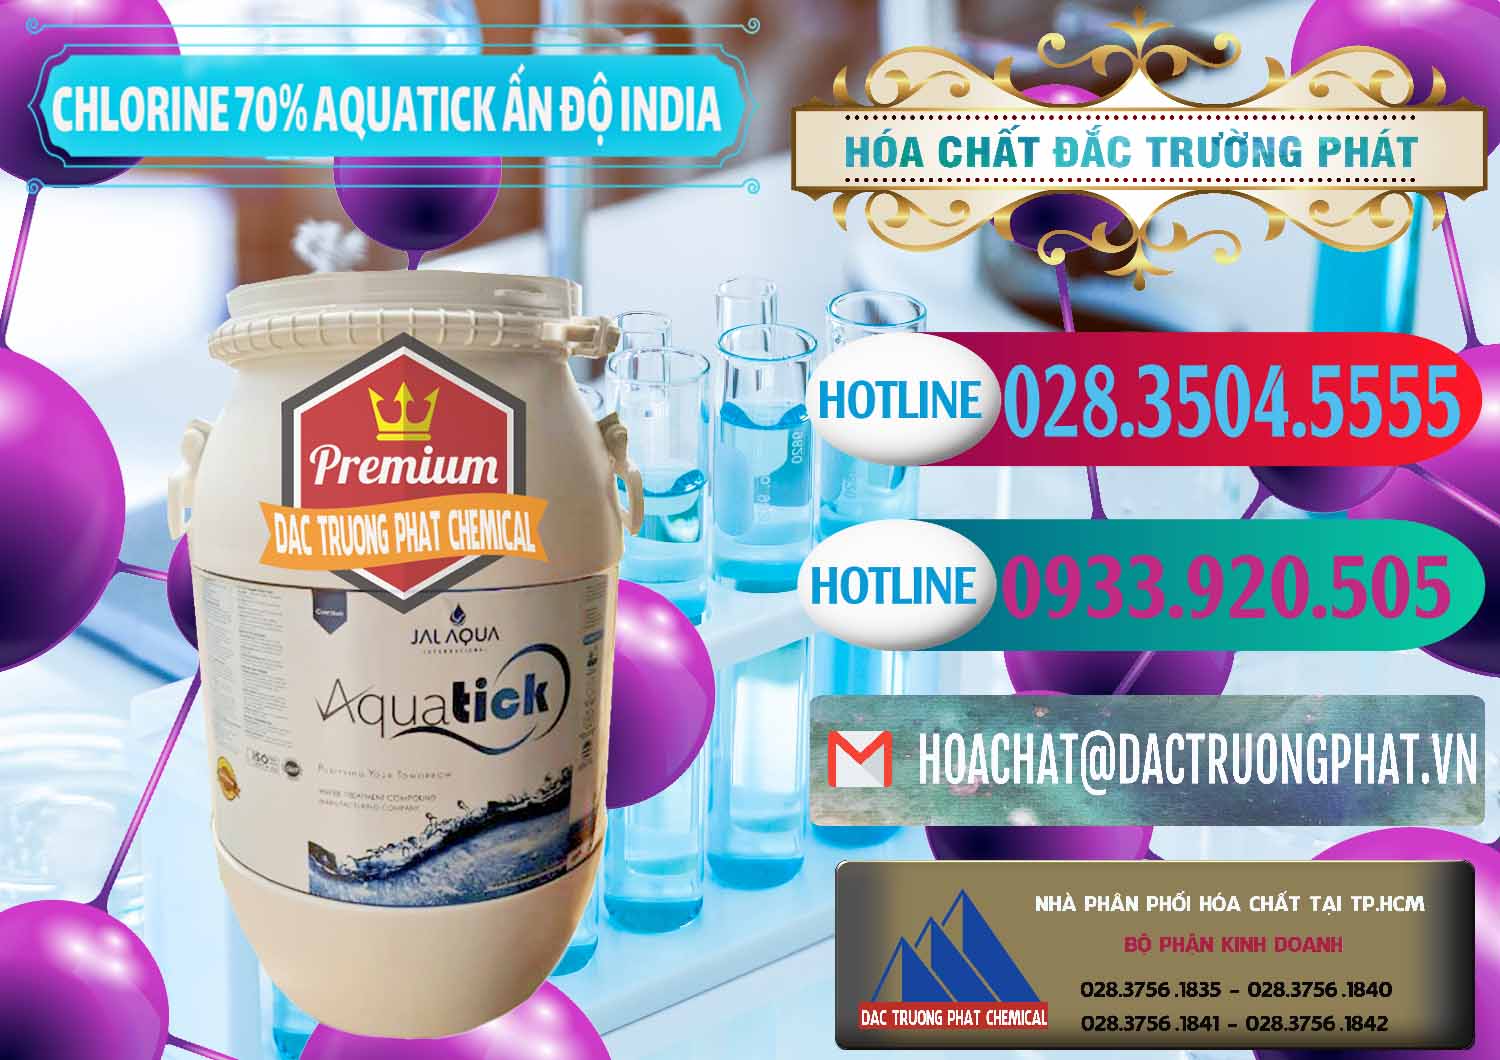 Cty cung cấp _ bán Chlorine – Clorin 70% Aquatick Jal Aqua Ấn Độ India - 0215 - Cty bán ( cung cấp ) hóa chất tại TP.HCM - truongphat.vn